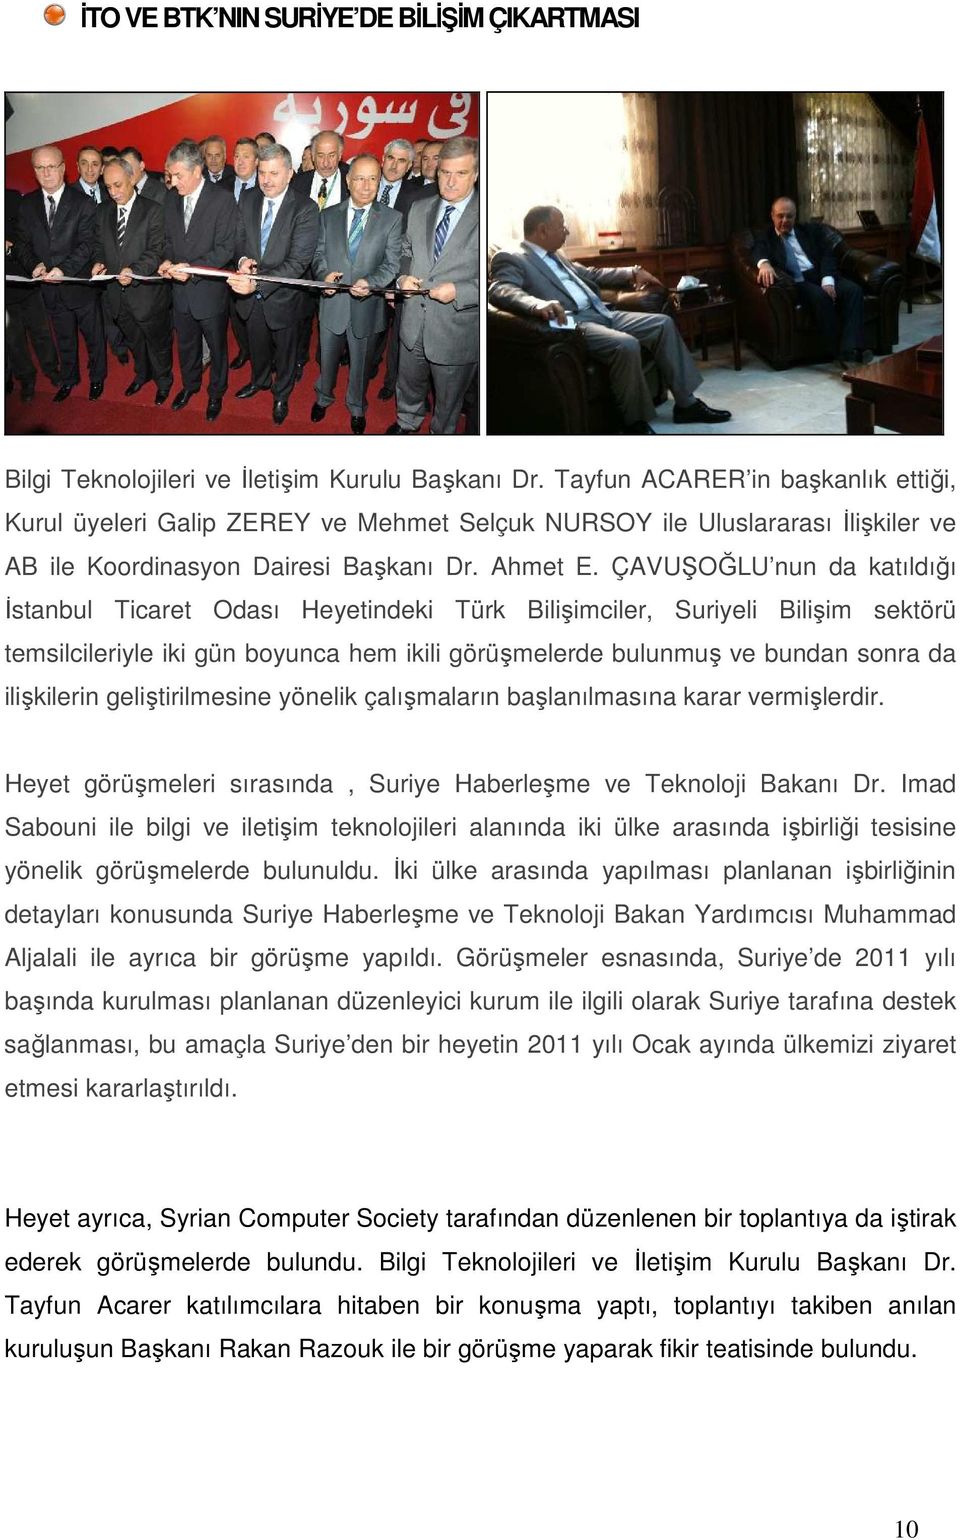 ÇAVUŞOĞLU nun da katıldığı Đstanbul Ticaret Odası Heyetindeki Türk Bilişimciler, Suriyeli Bilişim sektörü temsilcileriyle iki gün boyunca hem ikili görüşmelerde bulunmuş ve bundan sonra da